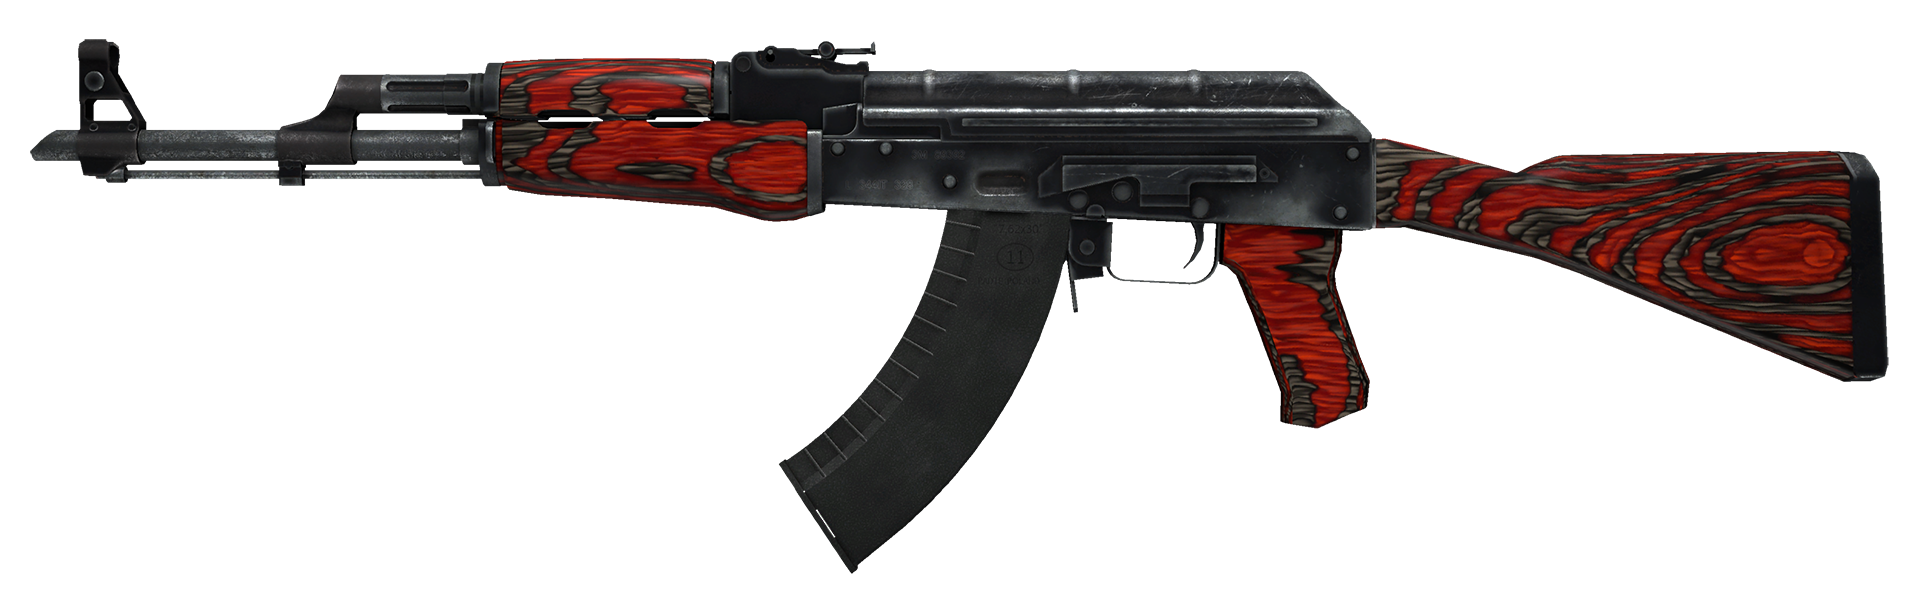 AK-47 Red Laminate Large Rendering